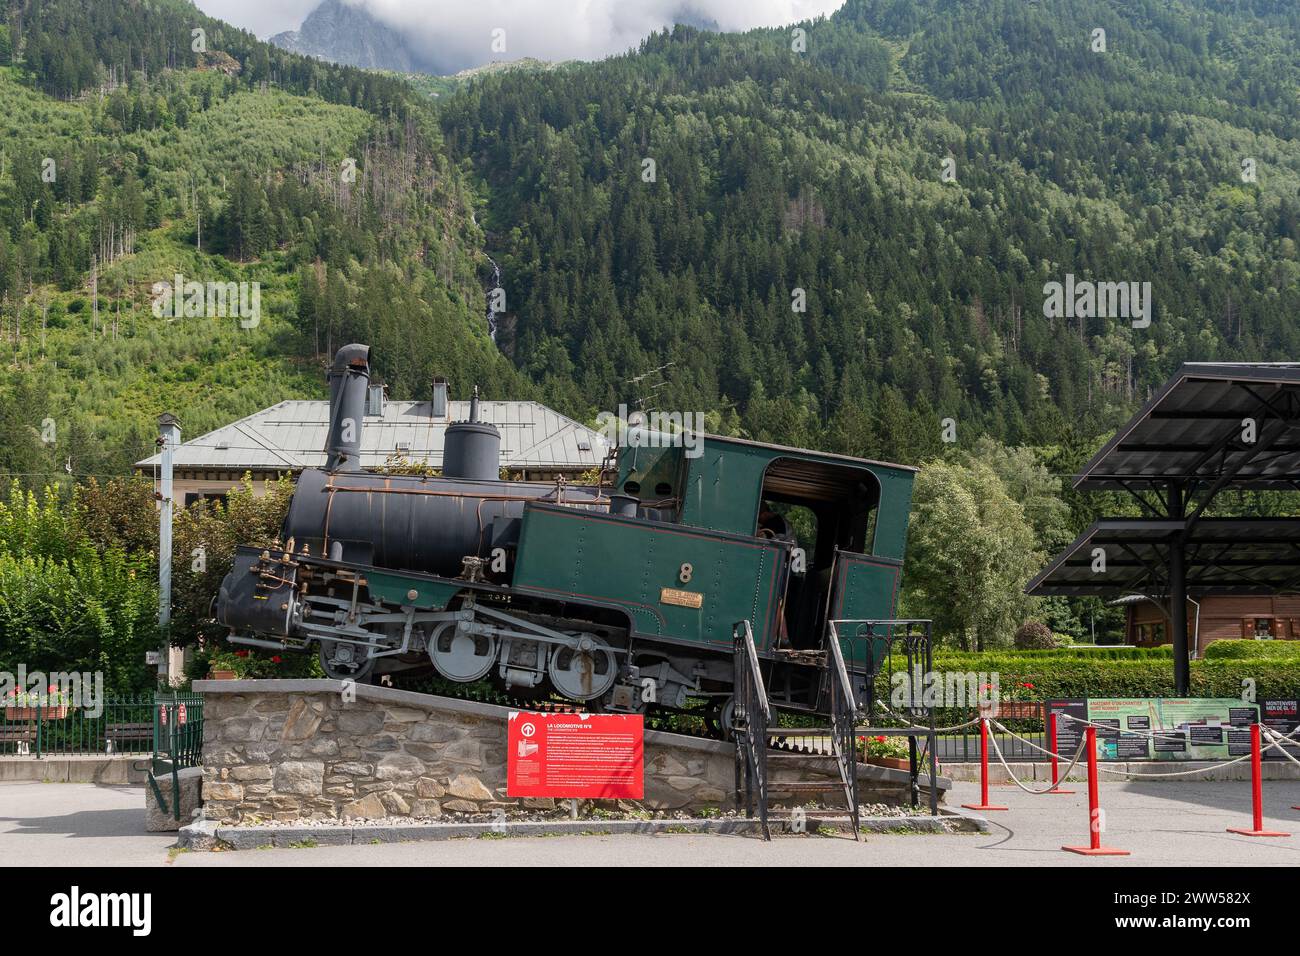 Historische Dampflokomotive Nr. 8, die von 1927 bis 1979 im Einsatz war, ausgestellt am Zahnradbahnhof von Montenvers, Chamonix, Haute Savoie, Frankreich Stockfoto